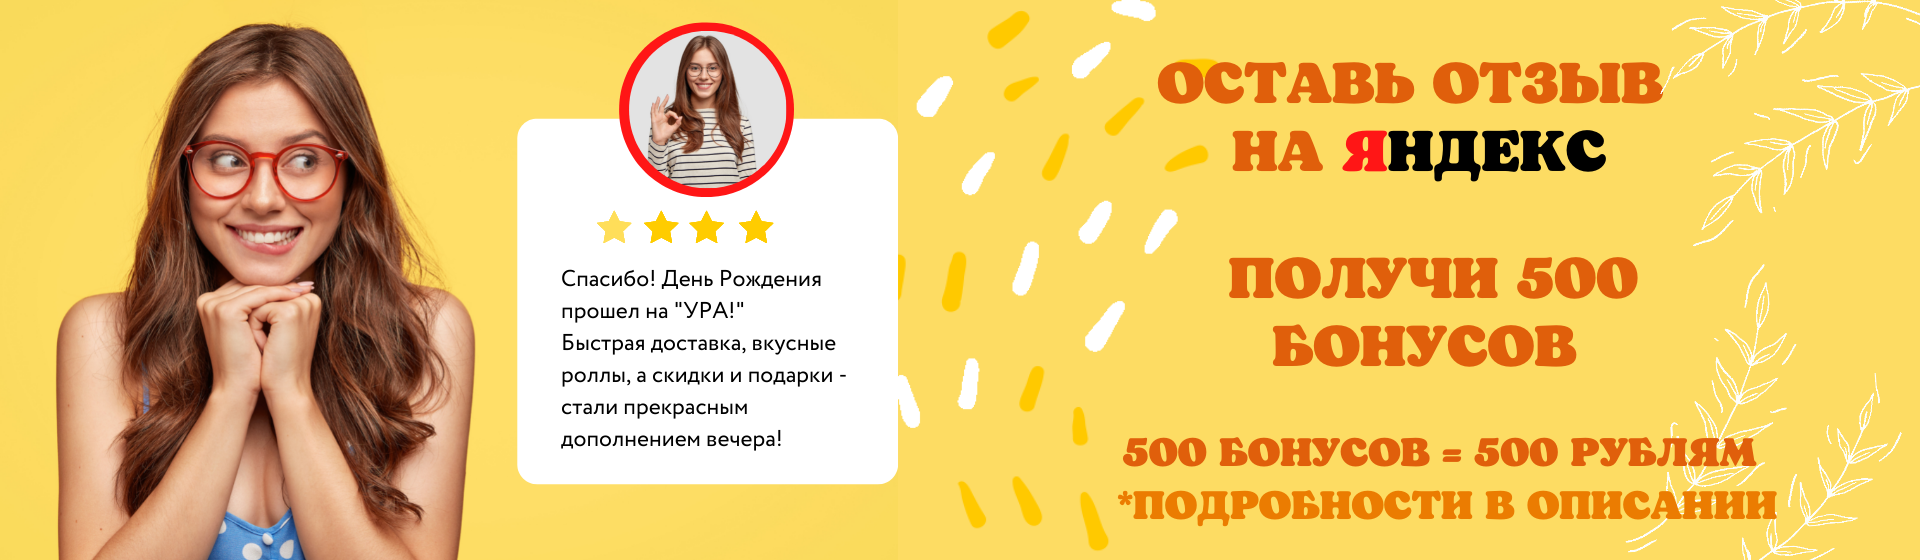 Дарим бонусы за отзывы в Яндекс